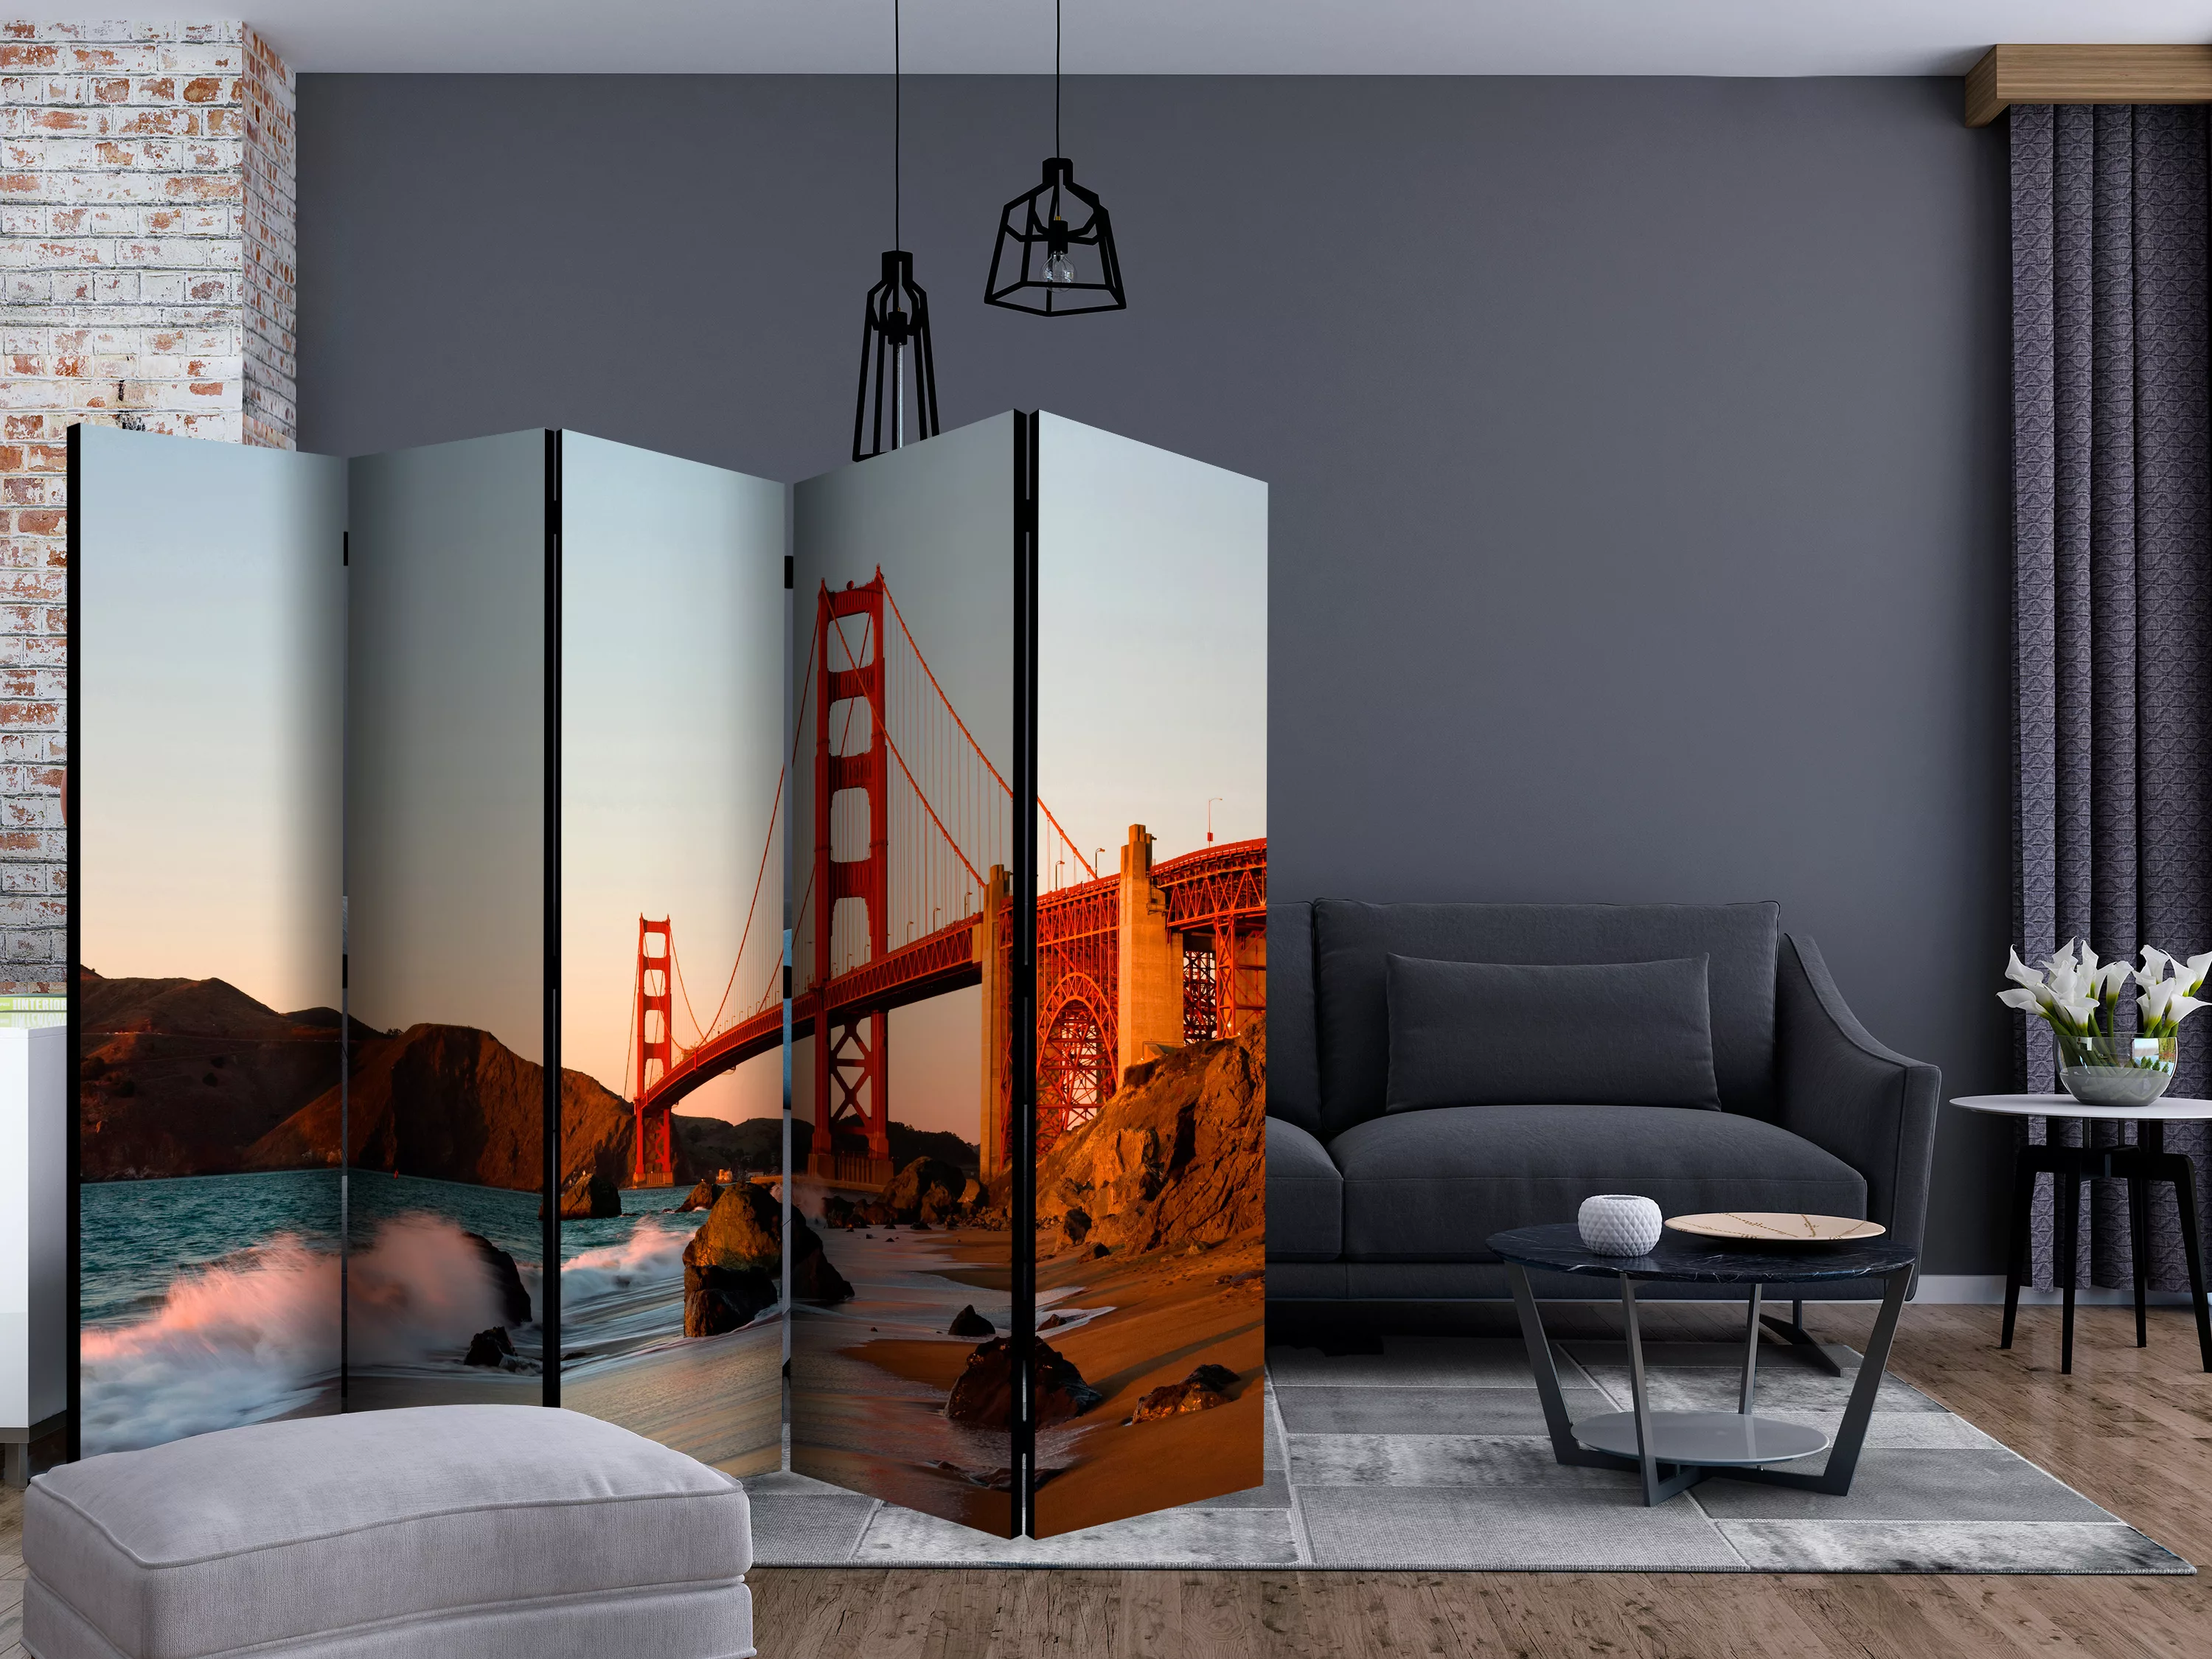 5-teiliges Paravent - Golden Gate Bridge - Sunset, San Francisco Ii [room günstig online kaufen